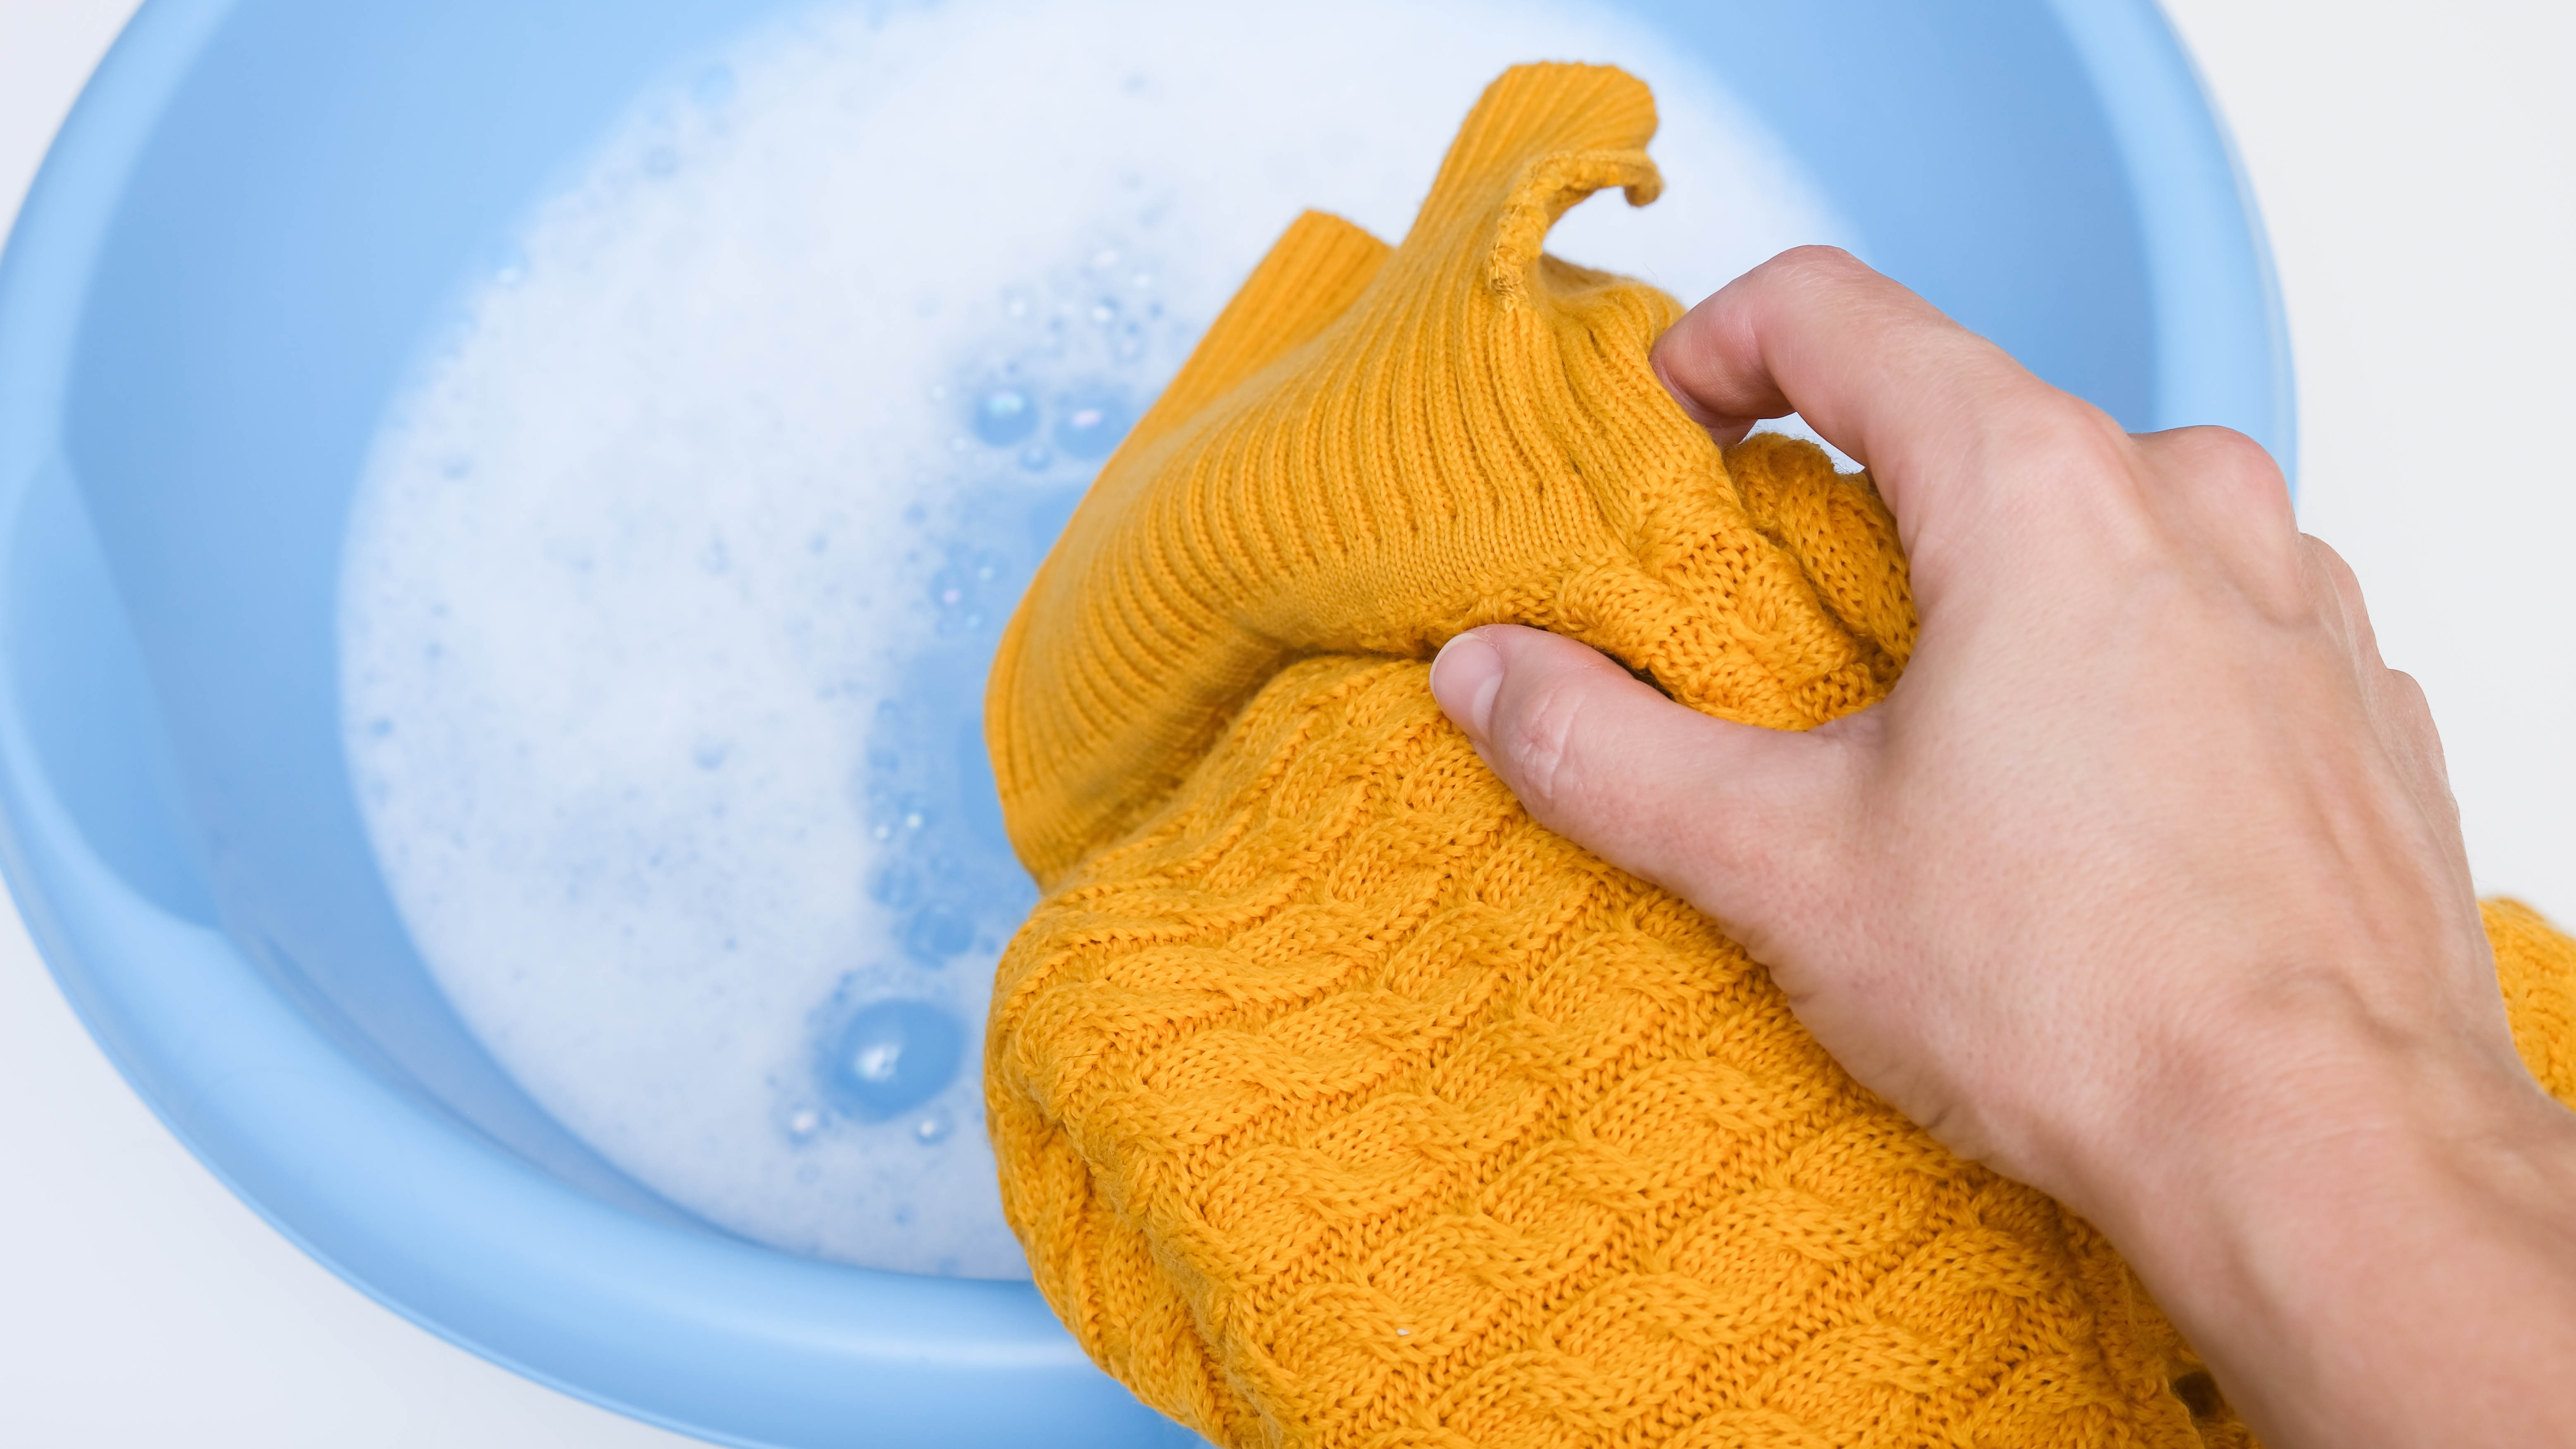 Оранжевый свитер, готовый к замачиванию в миске с водой и моющим средством.